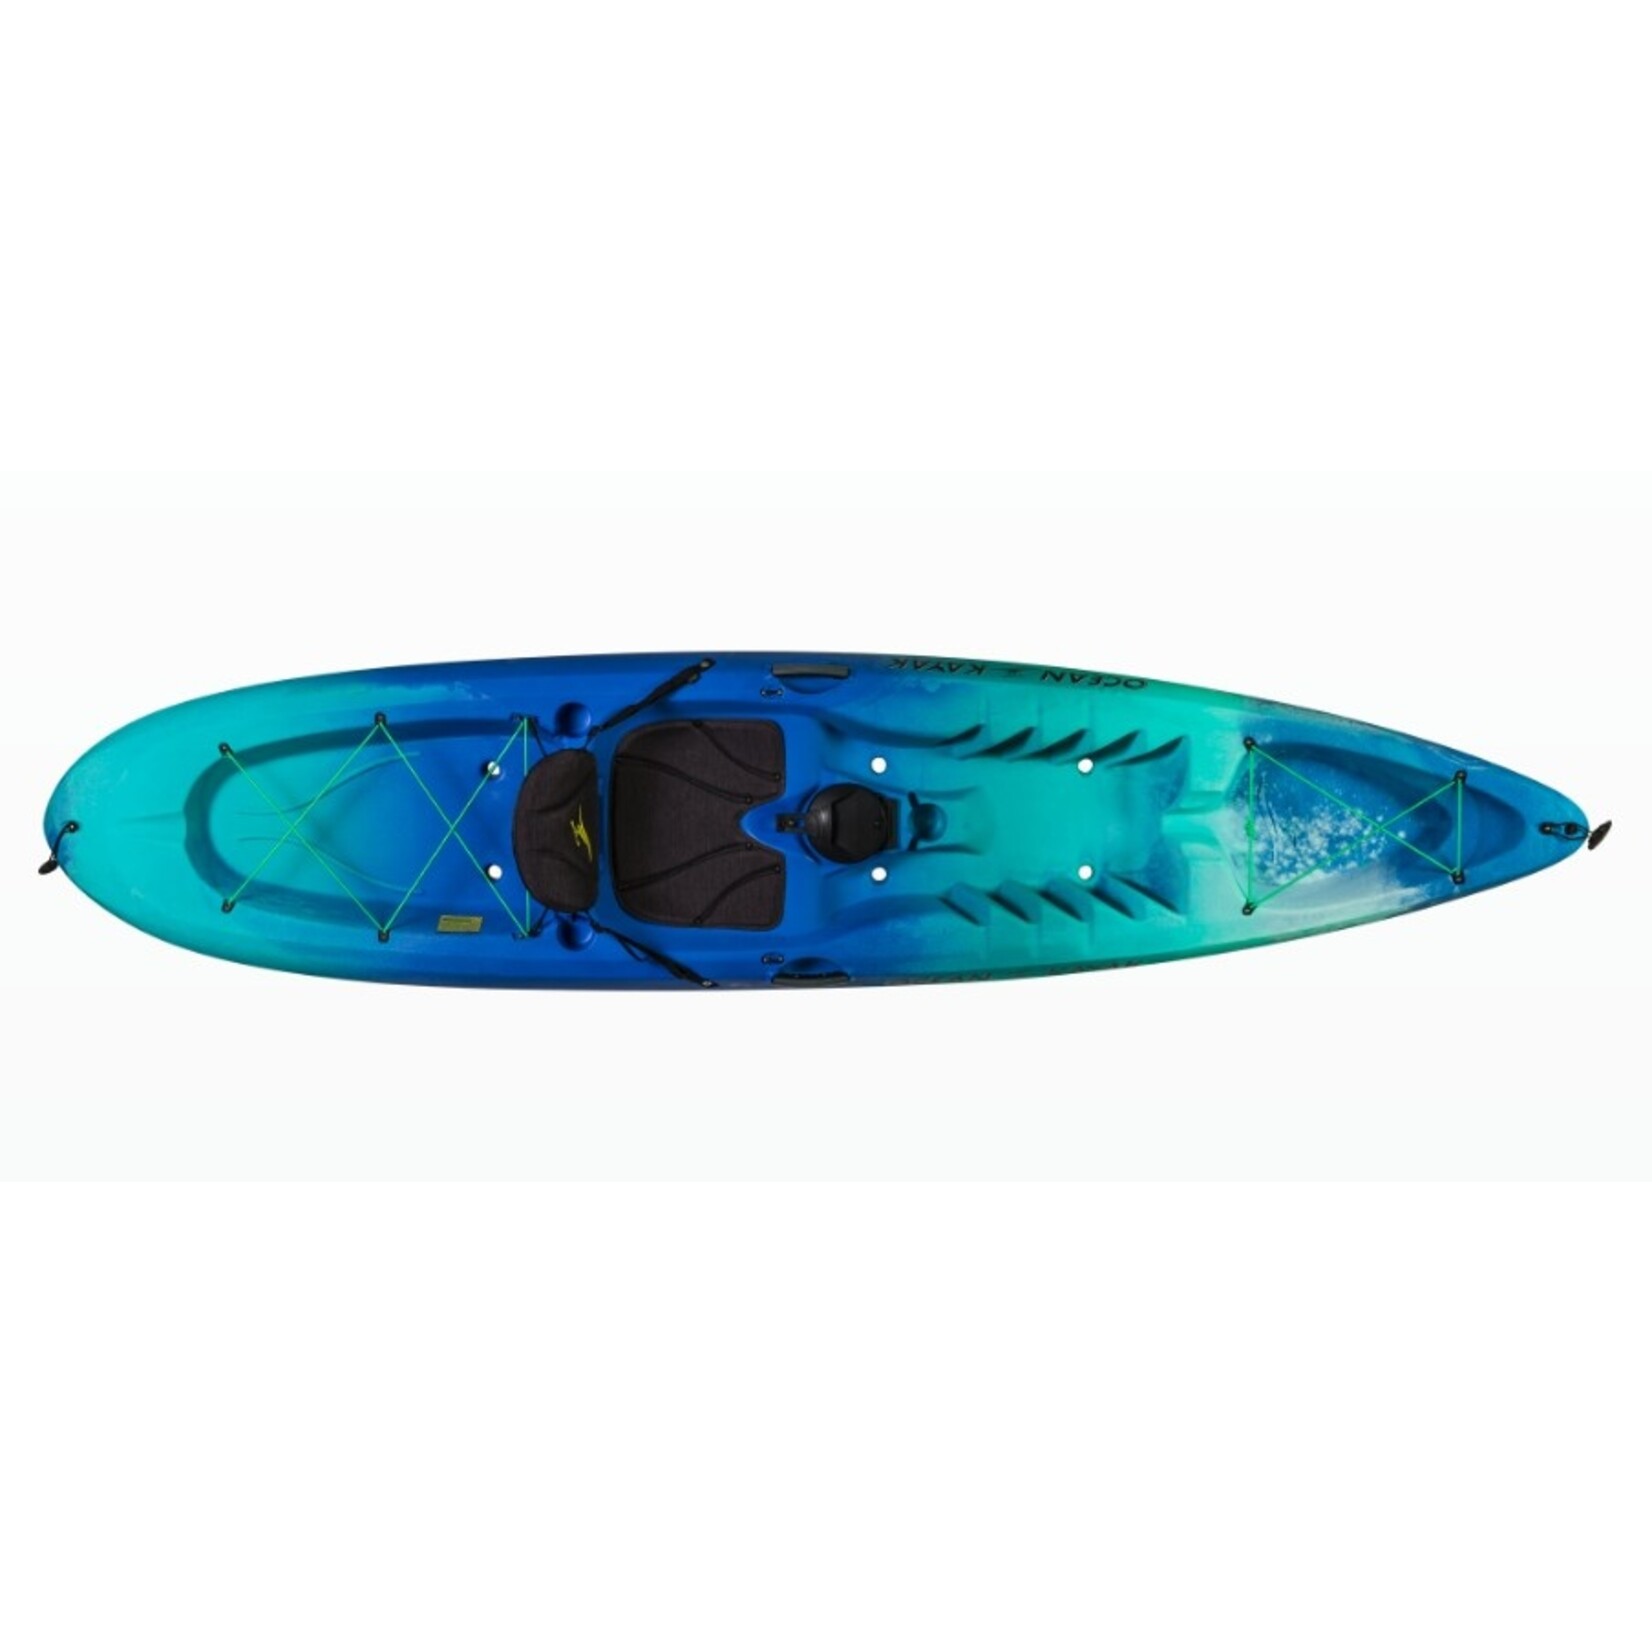 Ocean Kayak - Malibu 11.5